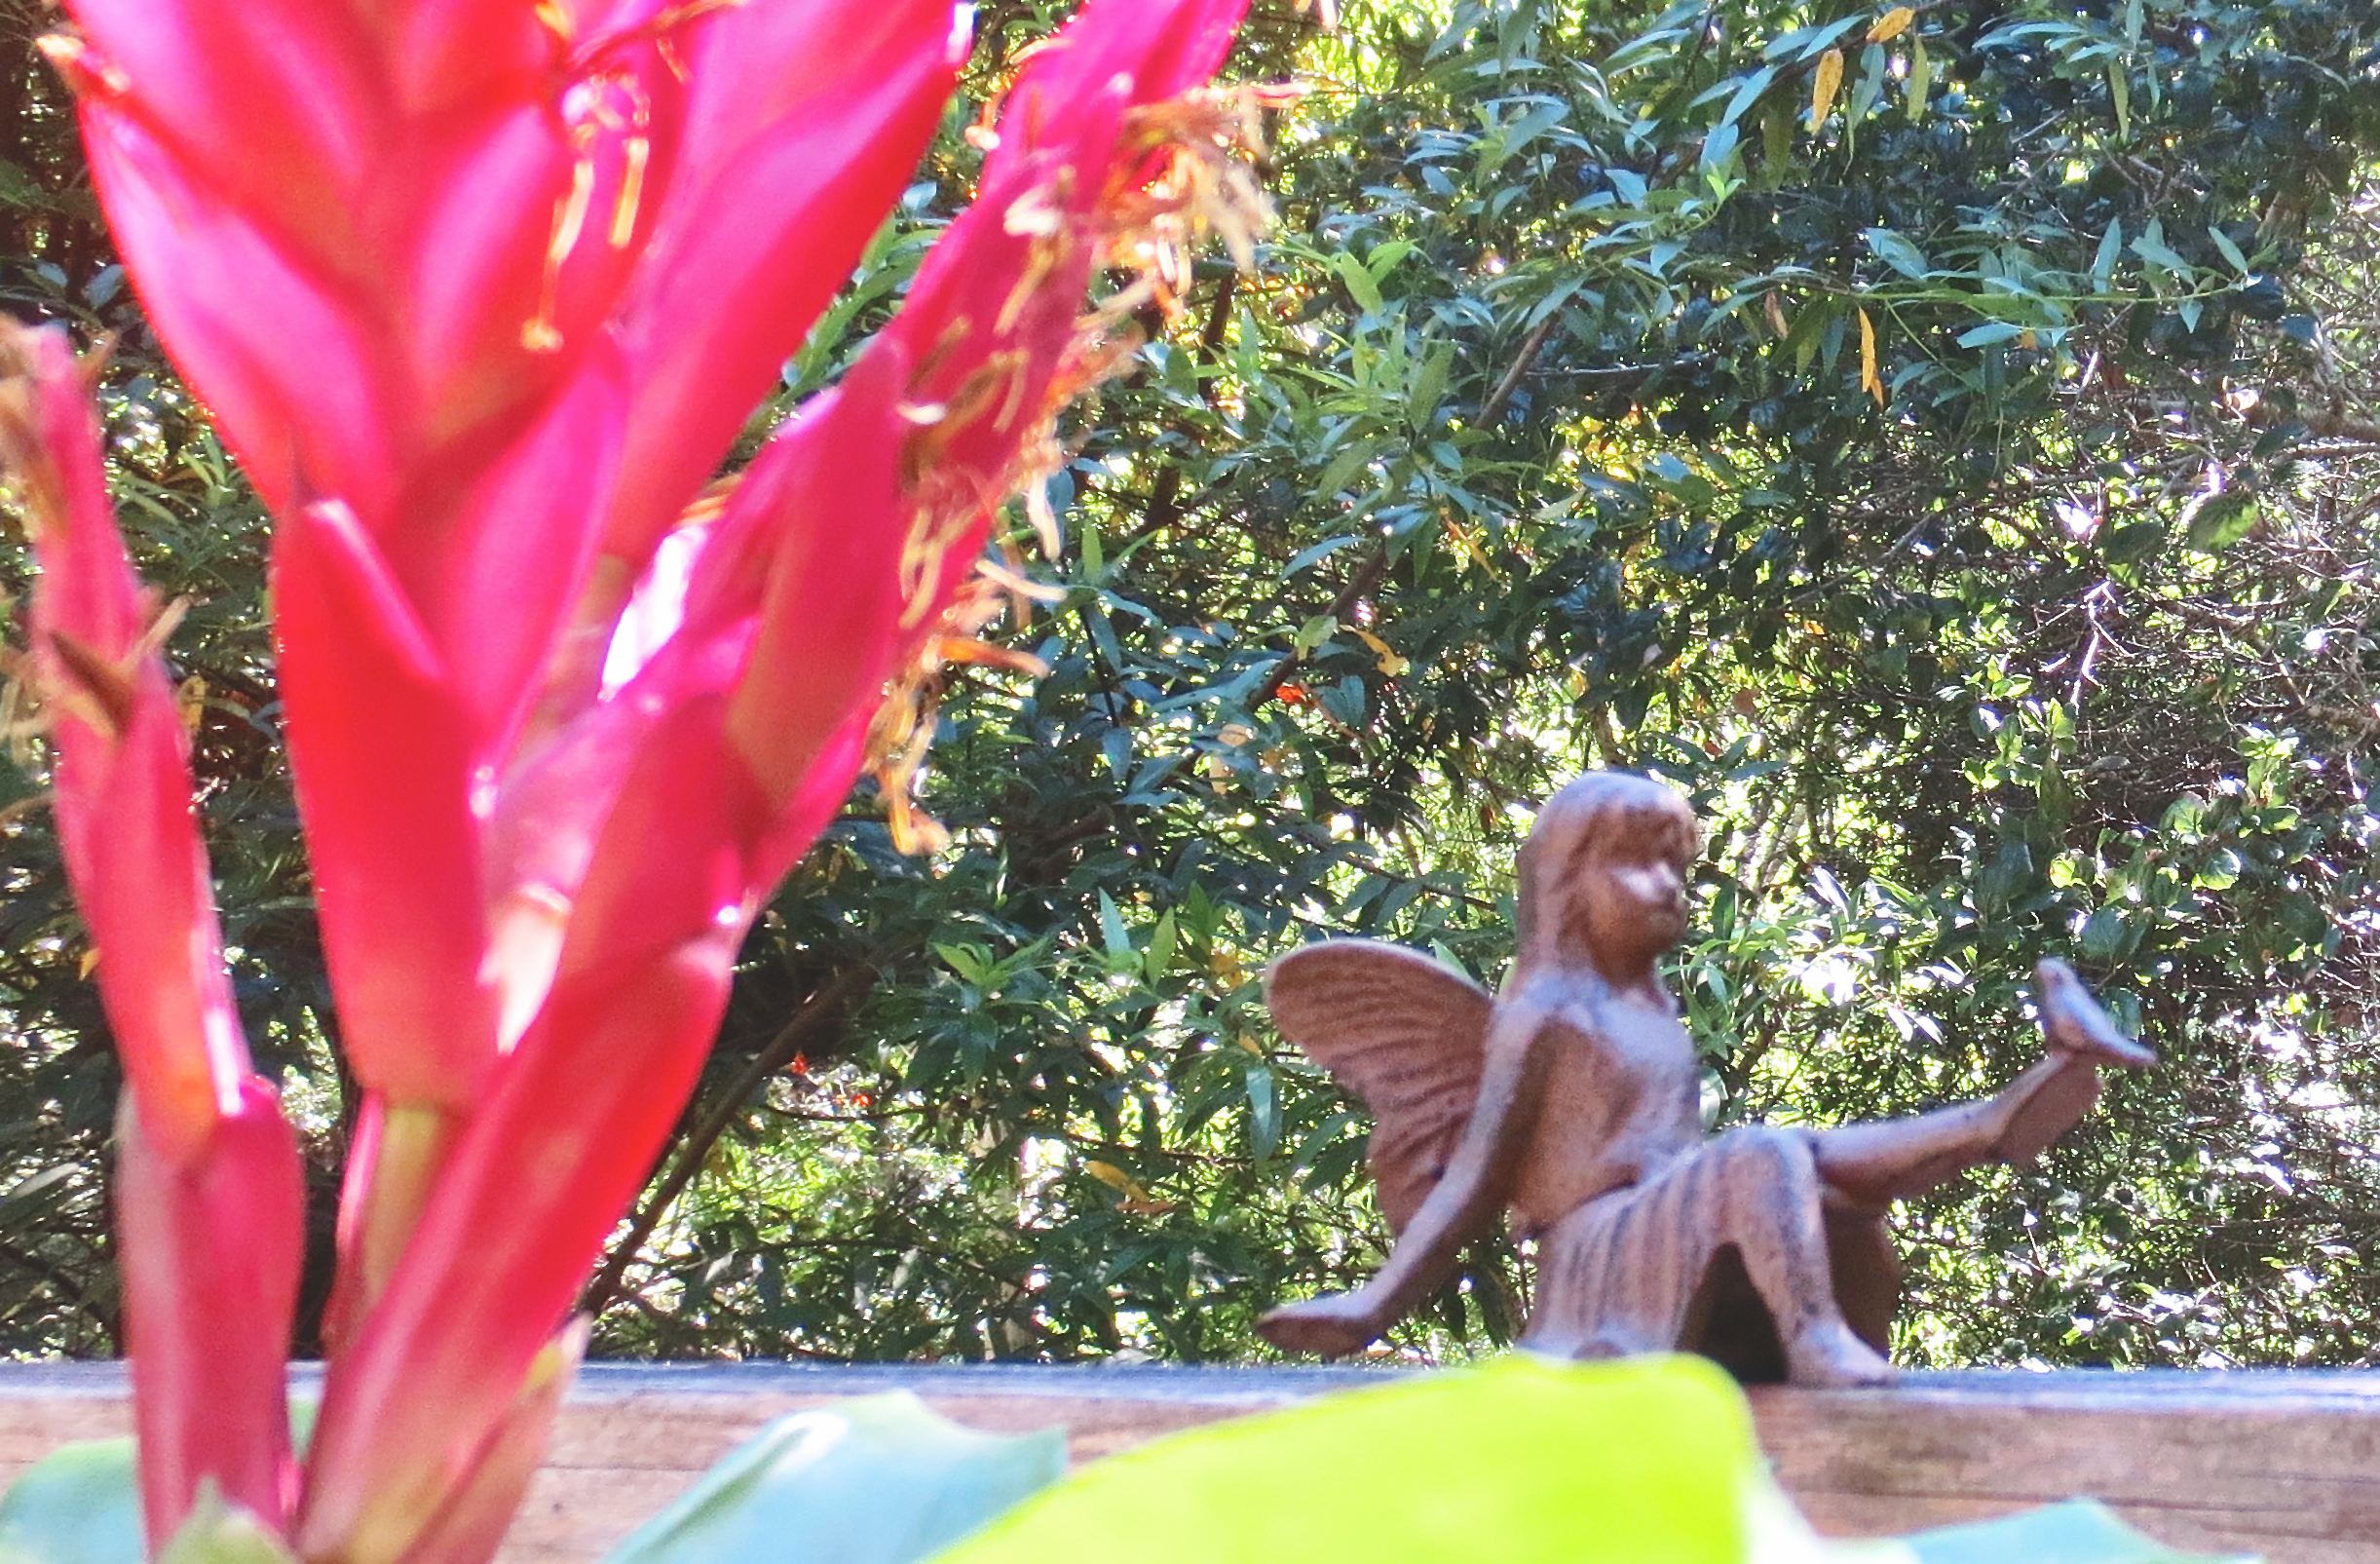 Angel in the garden